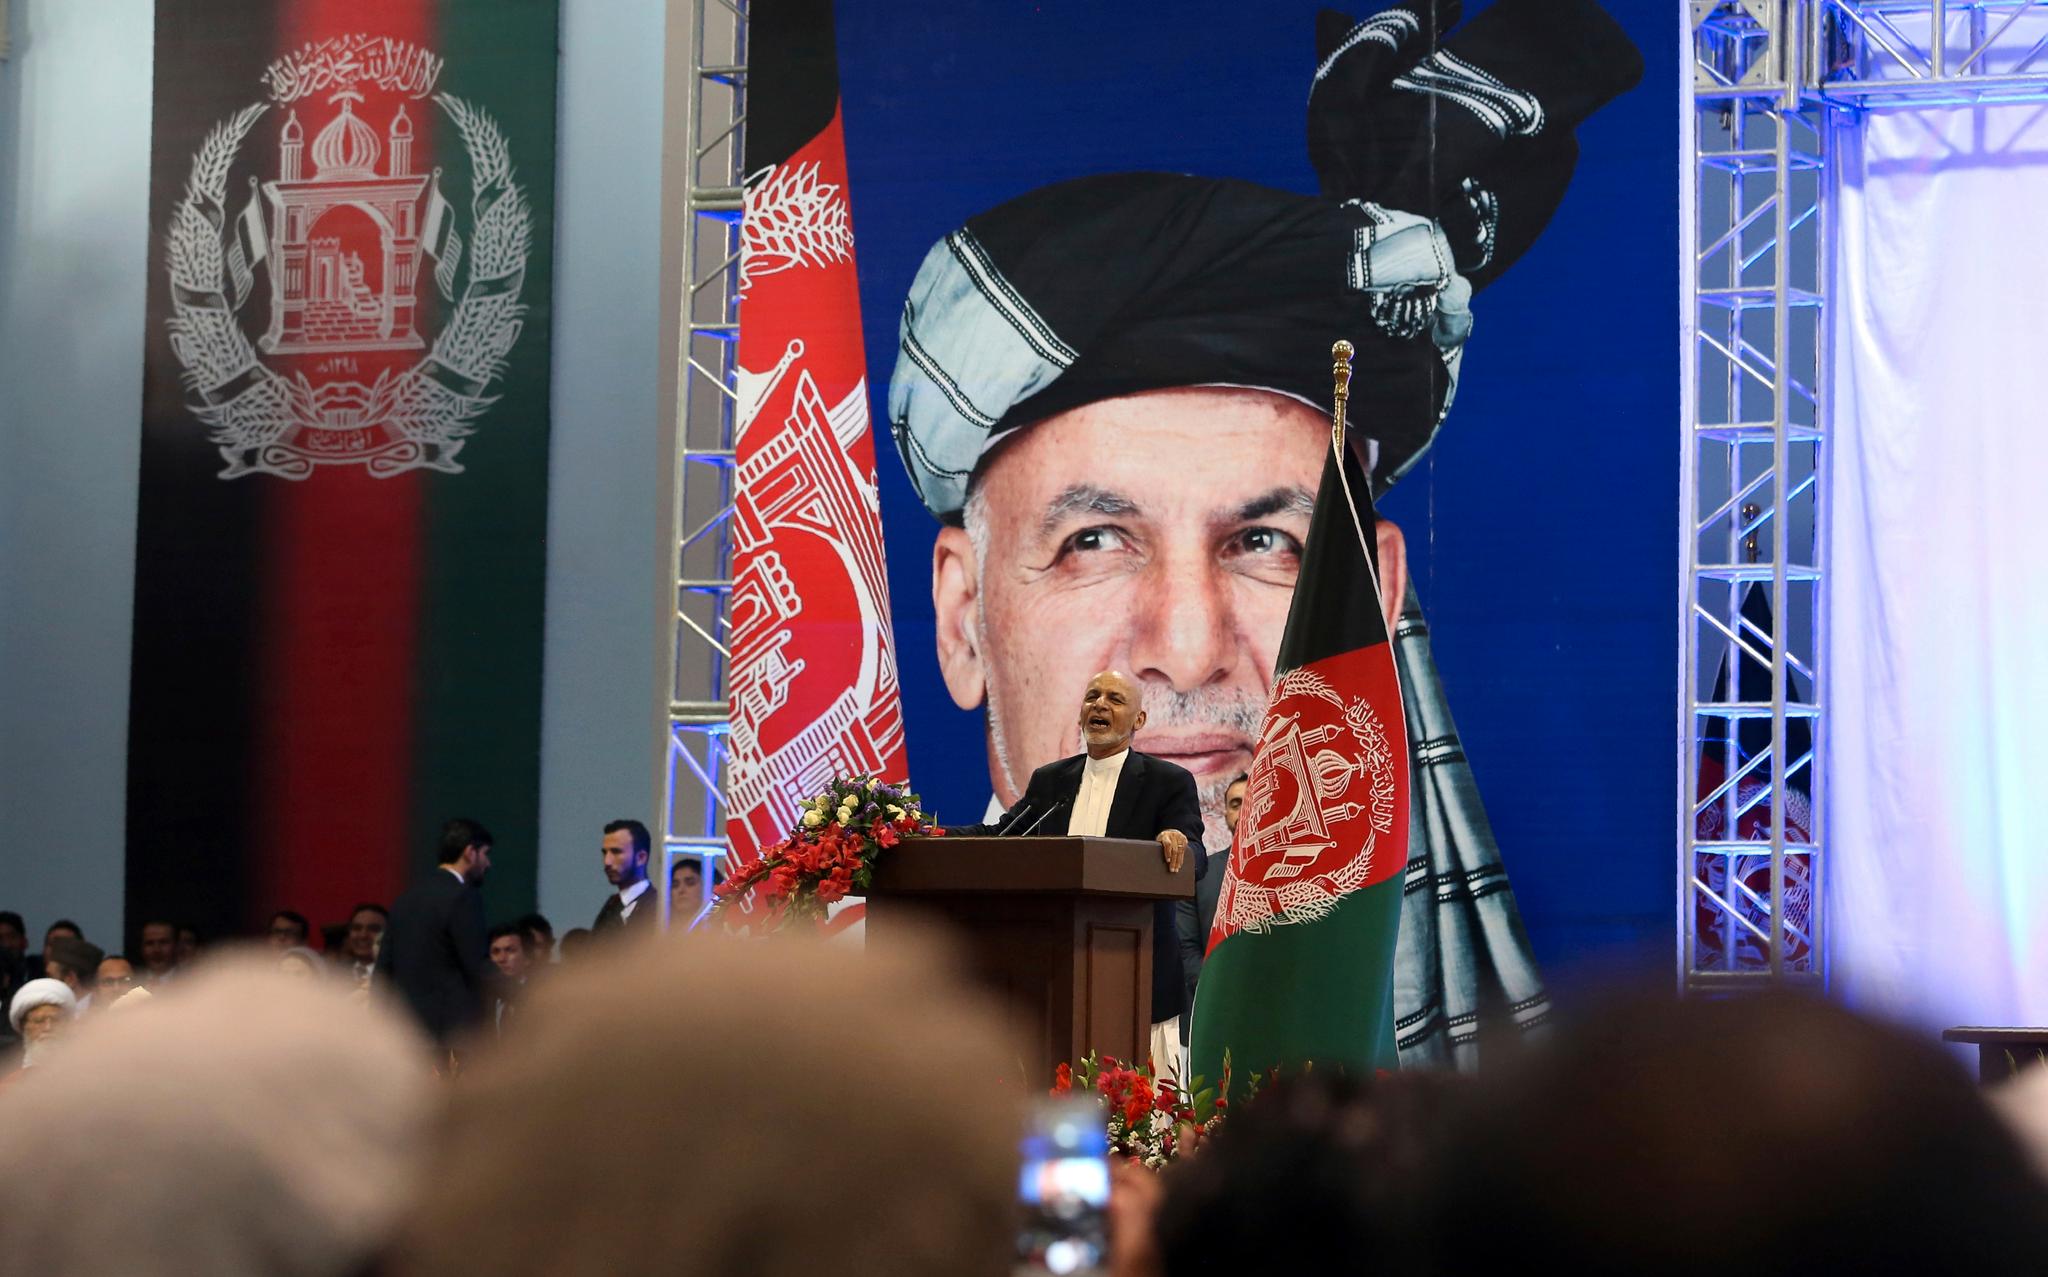 Presidentkandidat Ashraf Ghani taler under den første dagen av valgkampen i Kabul i Afghanistan søndag 28. juli 2019. 